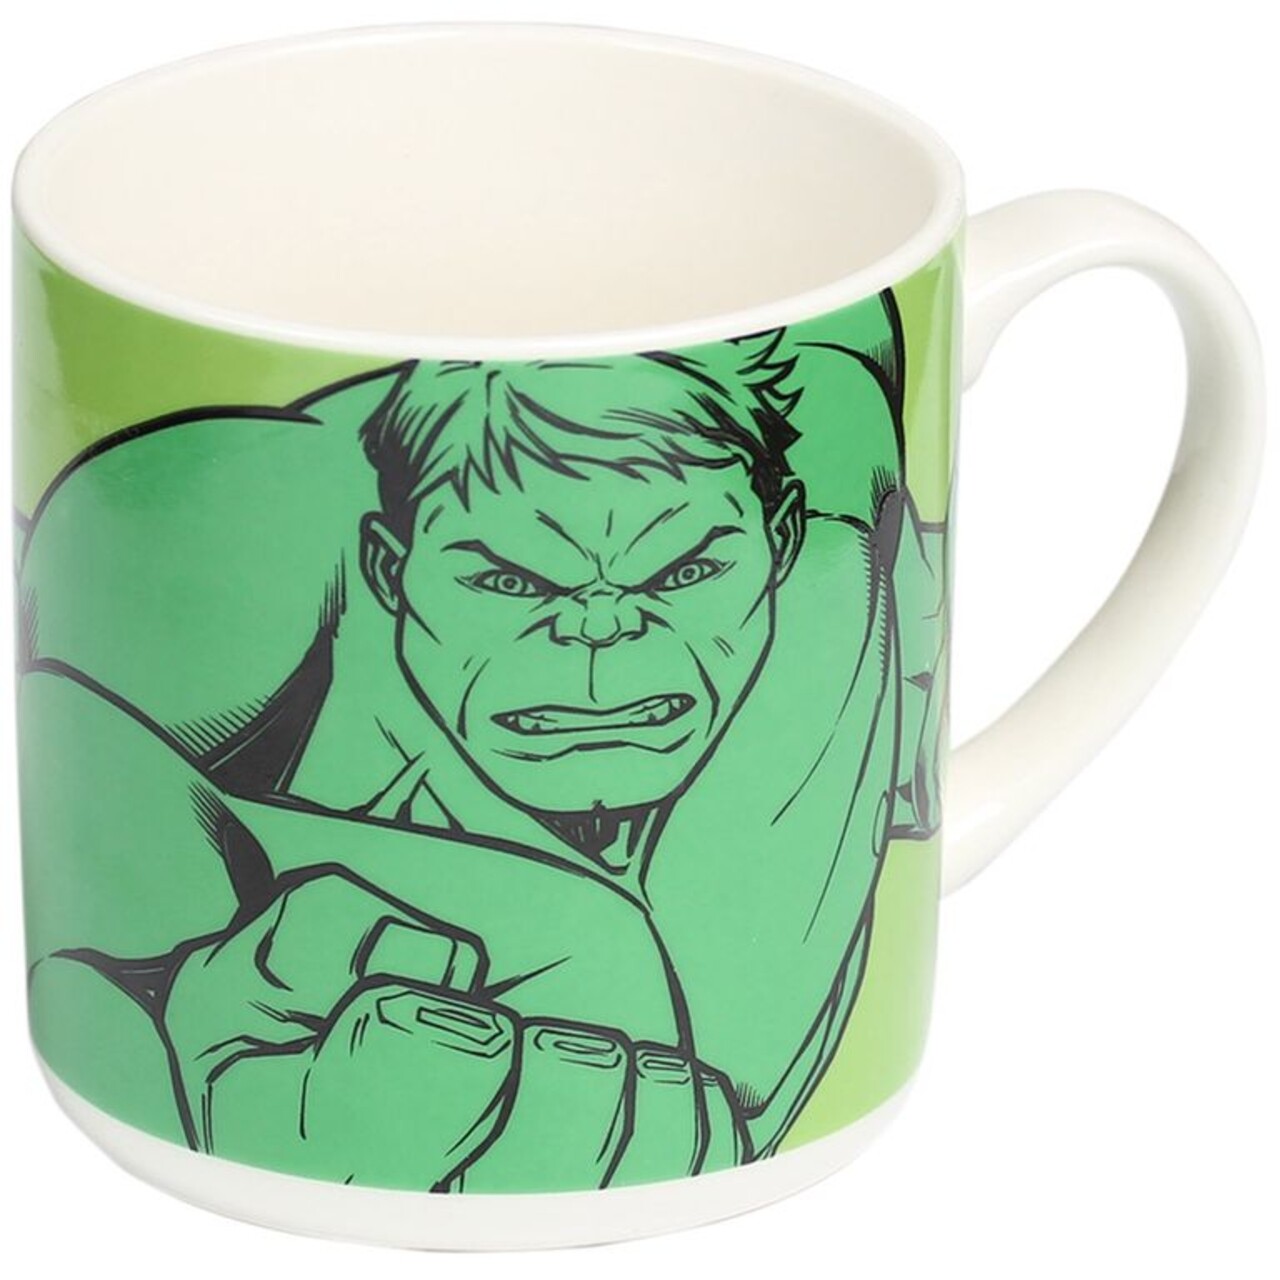 Cana Avengers Hulk, Marvel, 320 Ml, Portelan, Verde